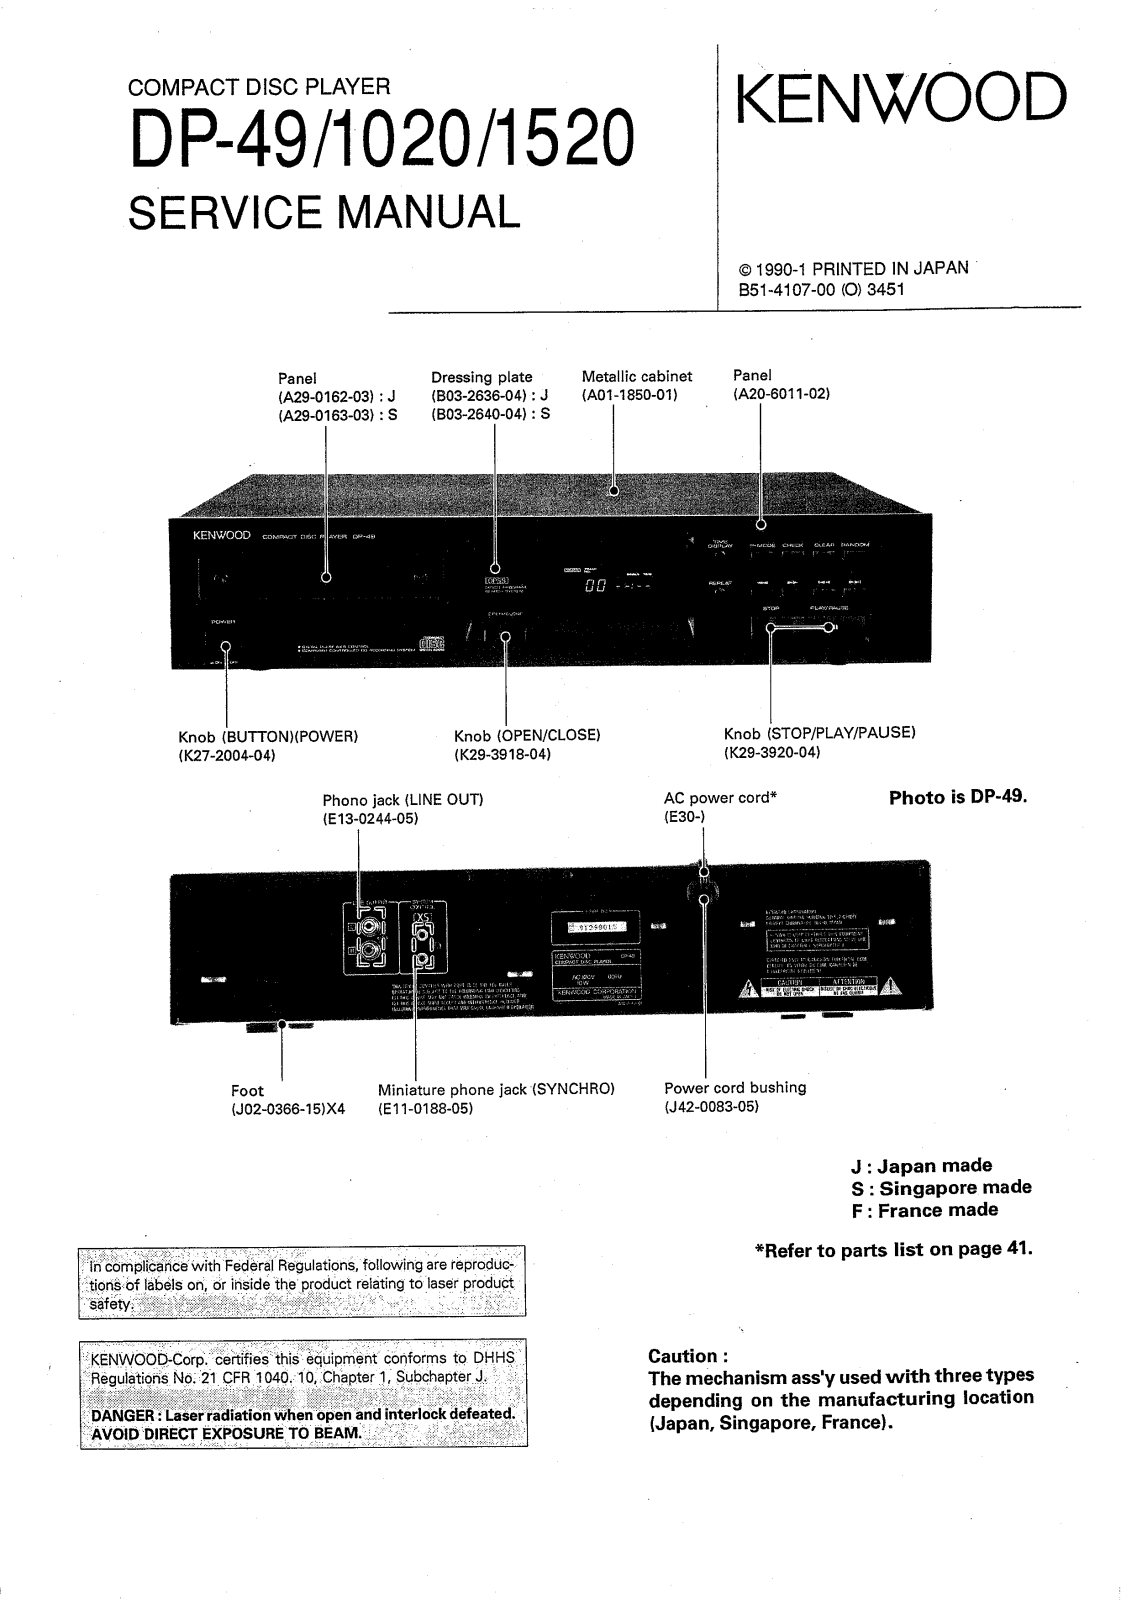 Kenwood DP-49, DP-1020, DP-1520 Service Manual